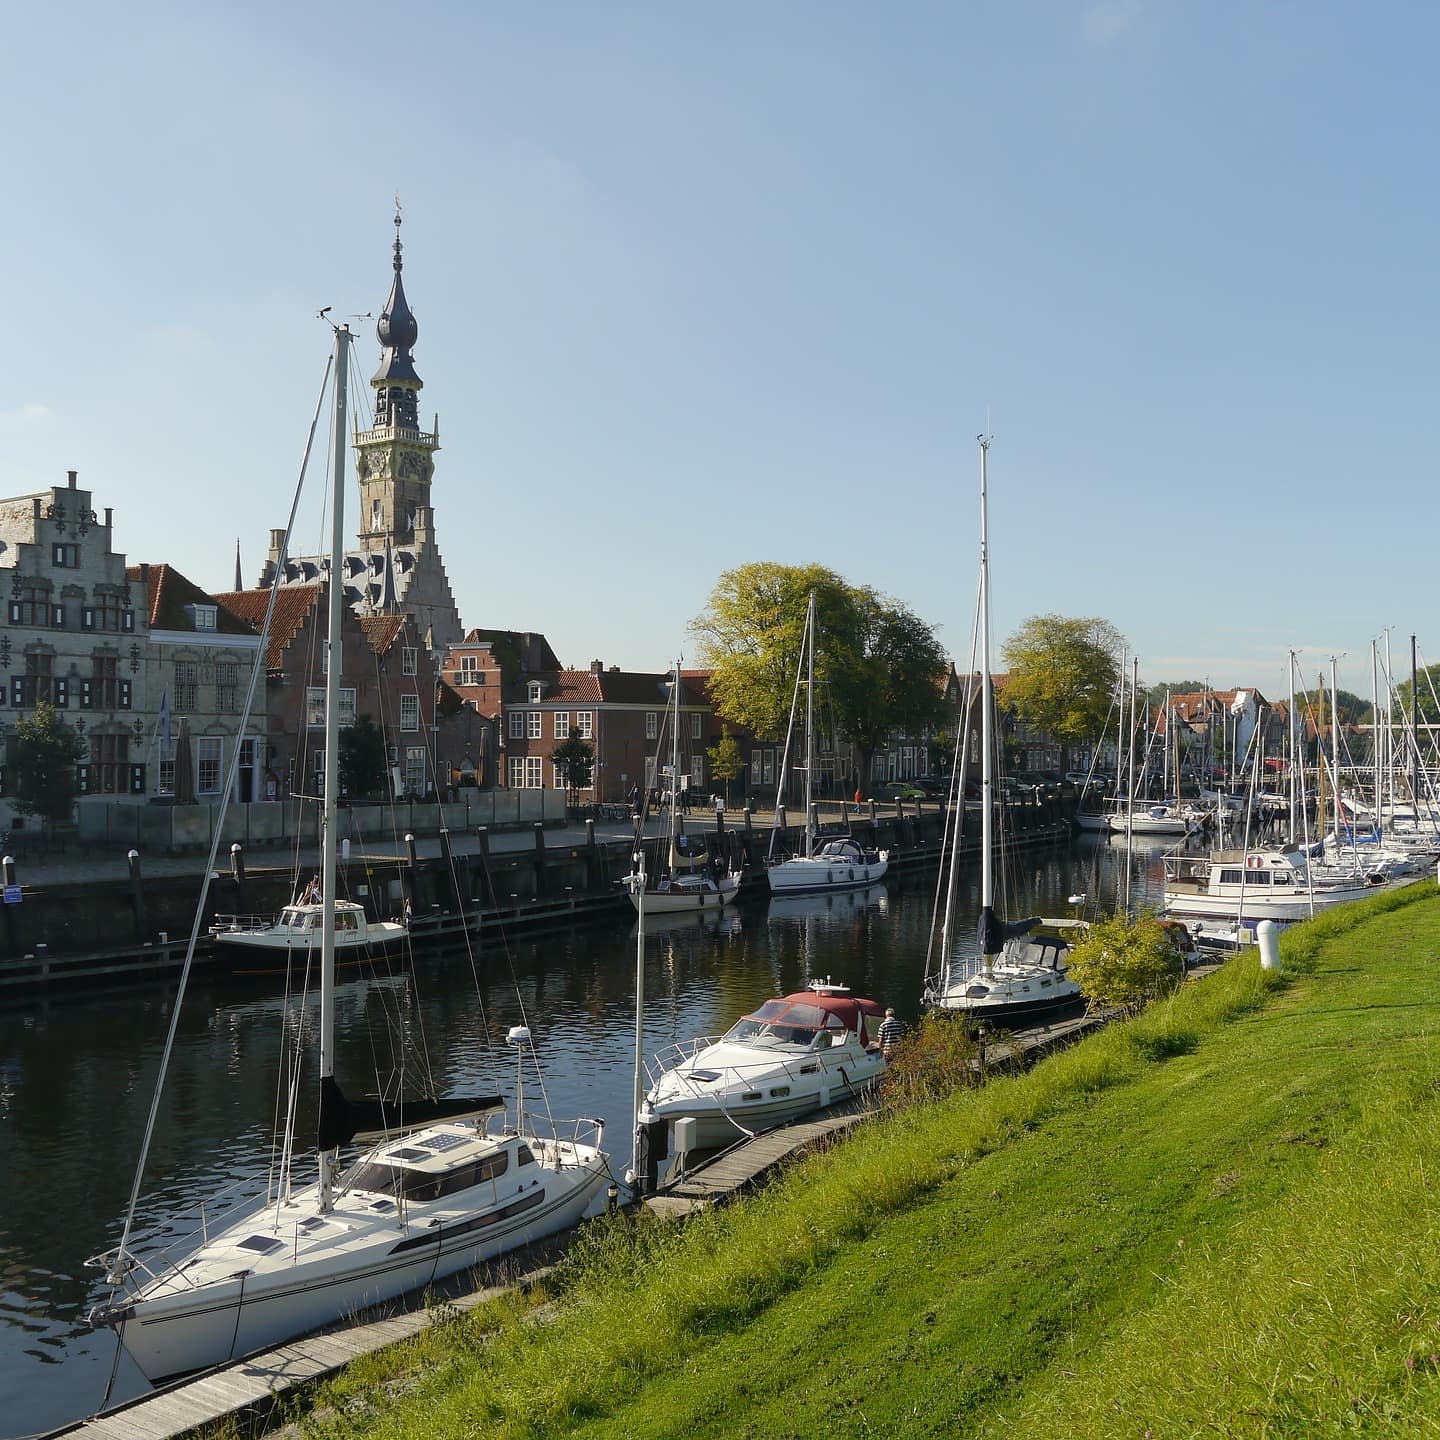 Häuser in Zeeland an einem Kanal in dem Boote ankern